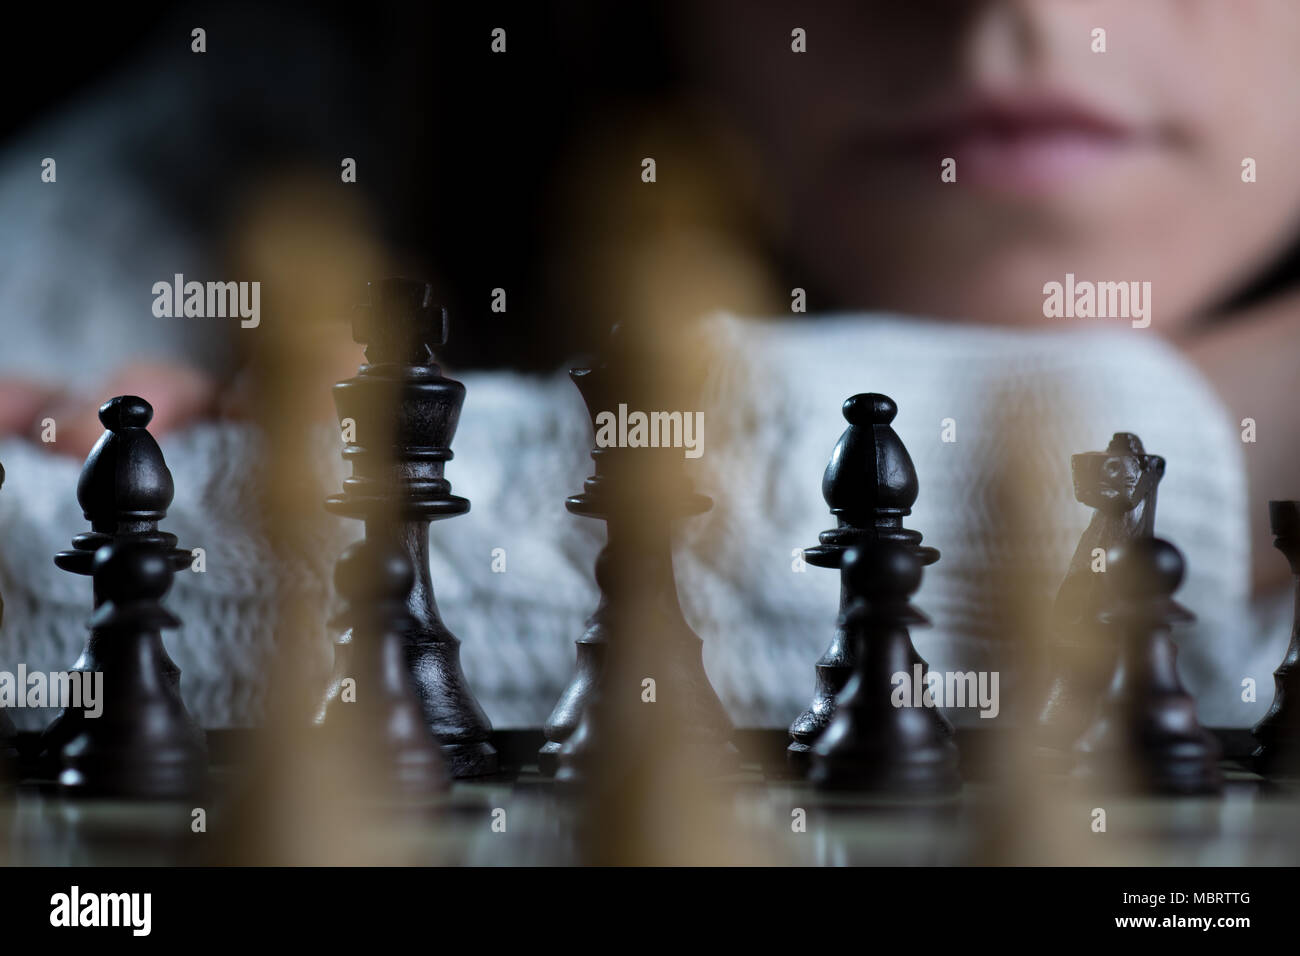 Grave donna giocando a scacchi a guardare la scacchiera Foto Stock